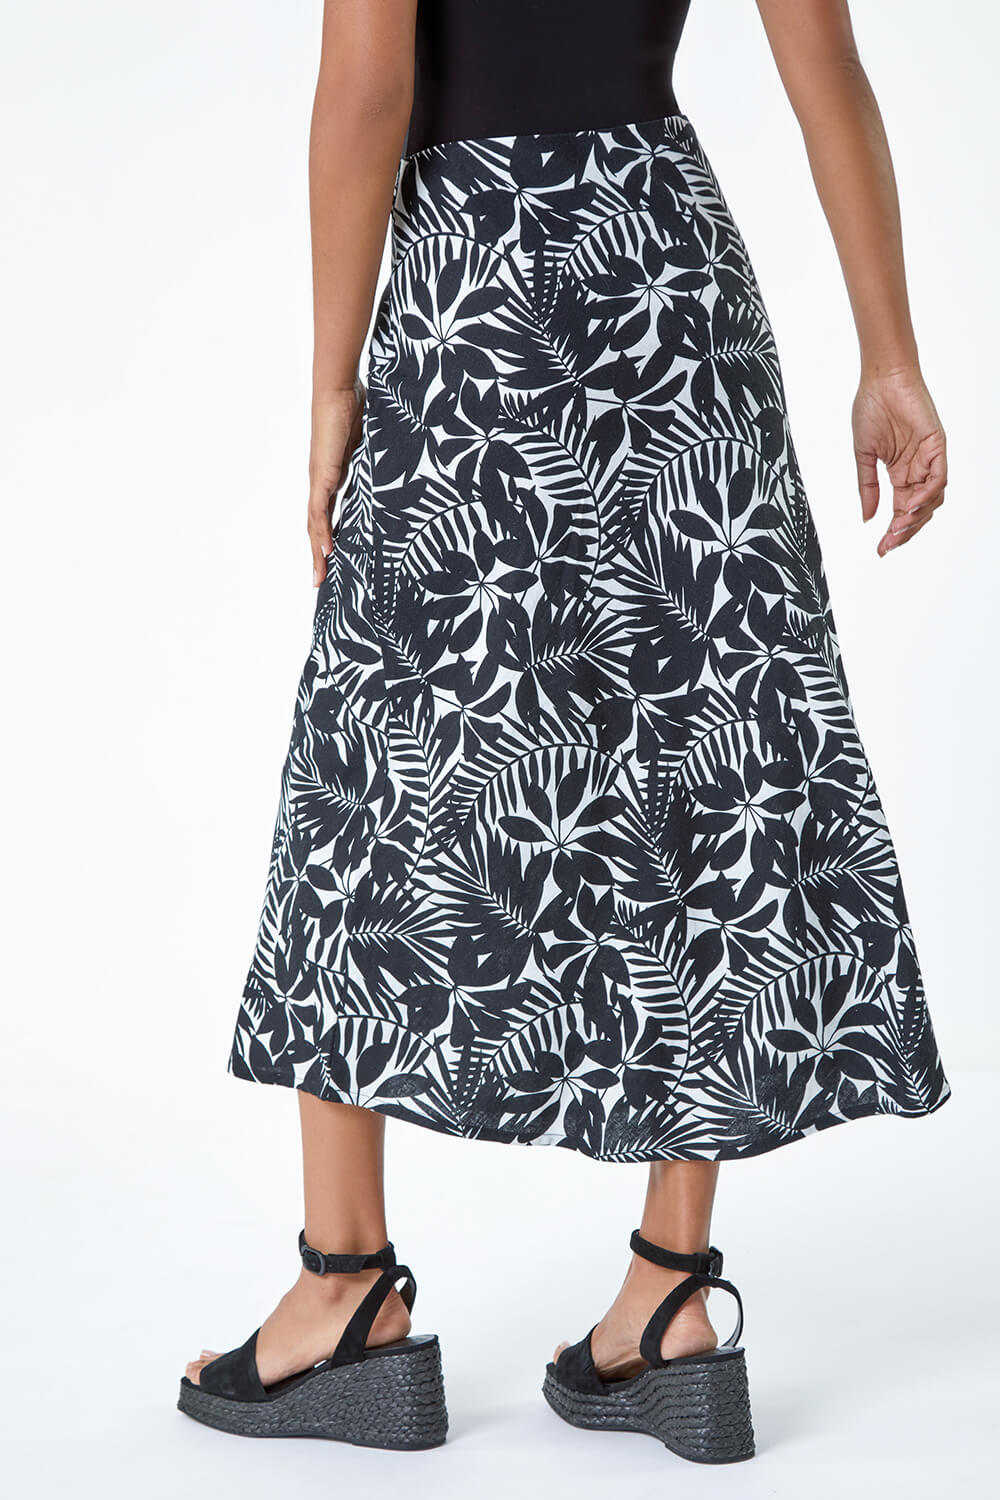 Black Leaf Print Linen Blend A-Line Skirt, Image 3 of 5